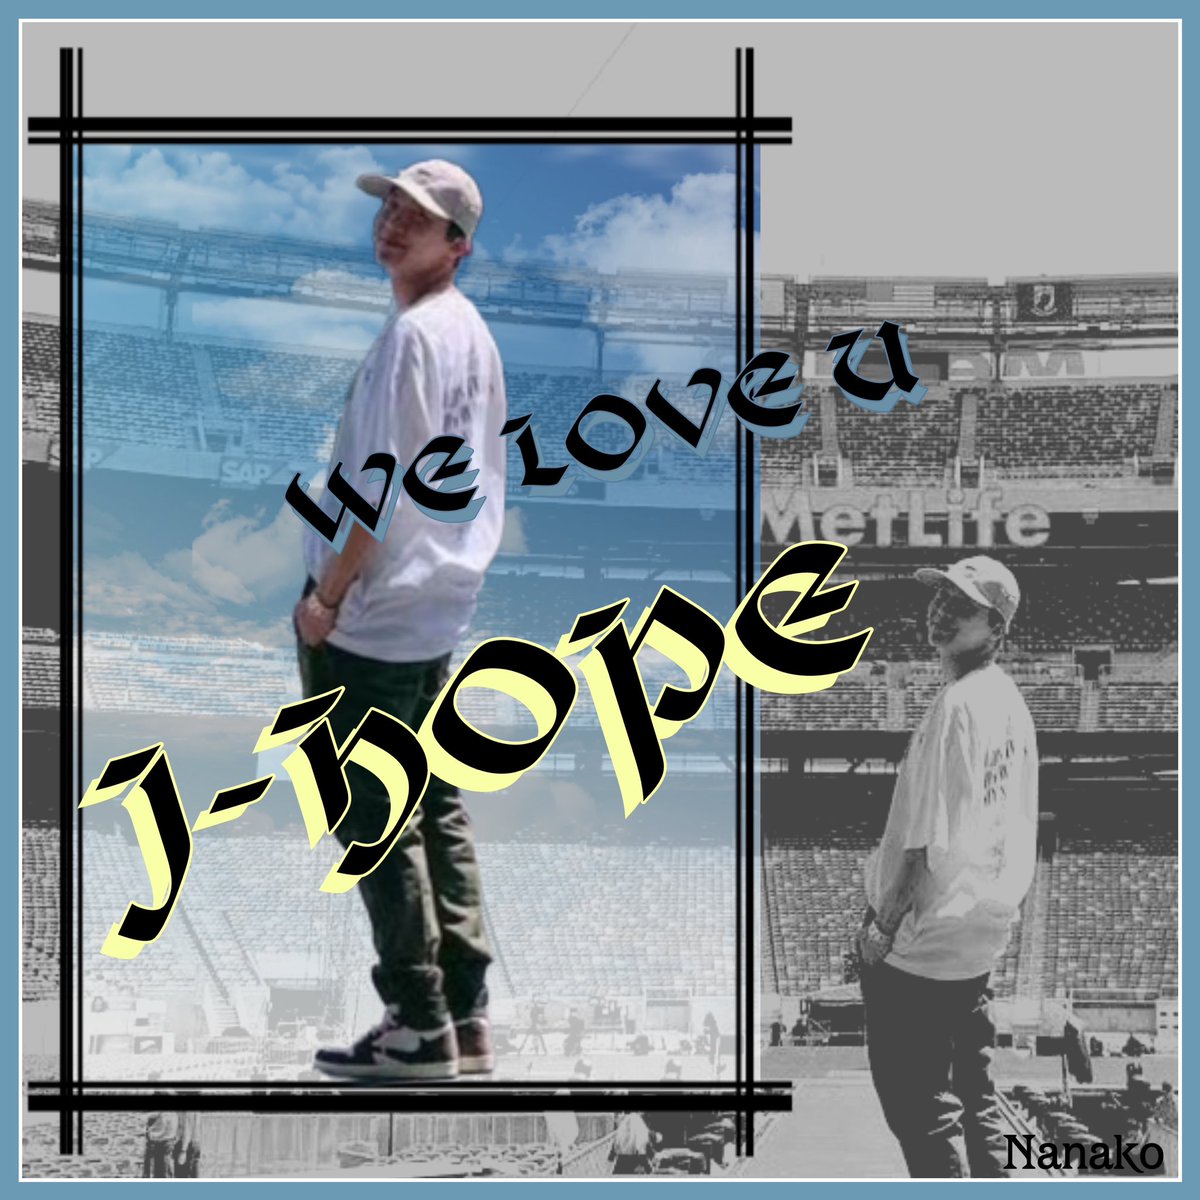 ✿.•387-162 ✿.•

🌈今日も一緒に🌈
💓Have a wonderful day💓

いいね👍しかお返事出来ませんが良かったらRTや繋げ♡♡一緒に応援お願いします💞🥰🙏

🩷WE LOVE YOU J-HOPE 🩵
You're my hope✨
#UntilWeMeetAgainJHOPE 

#HOPE_ON_THE_STREET_VOL_1 
#JHOPE_NEURON #JHOPE 
#jhope #제이홉…